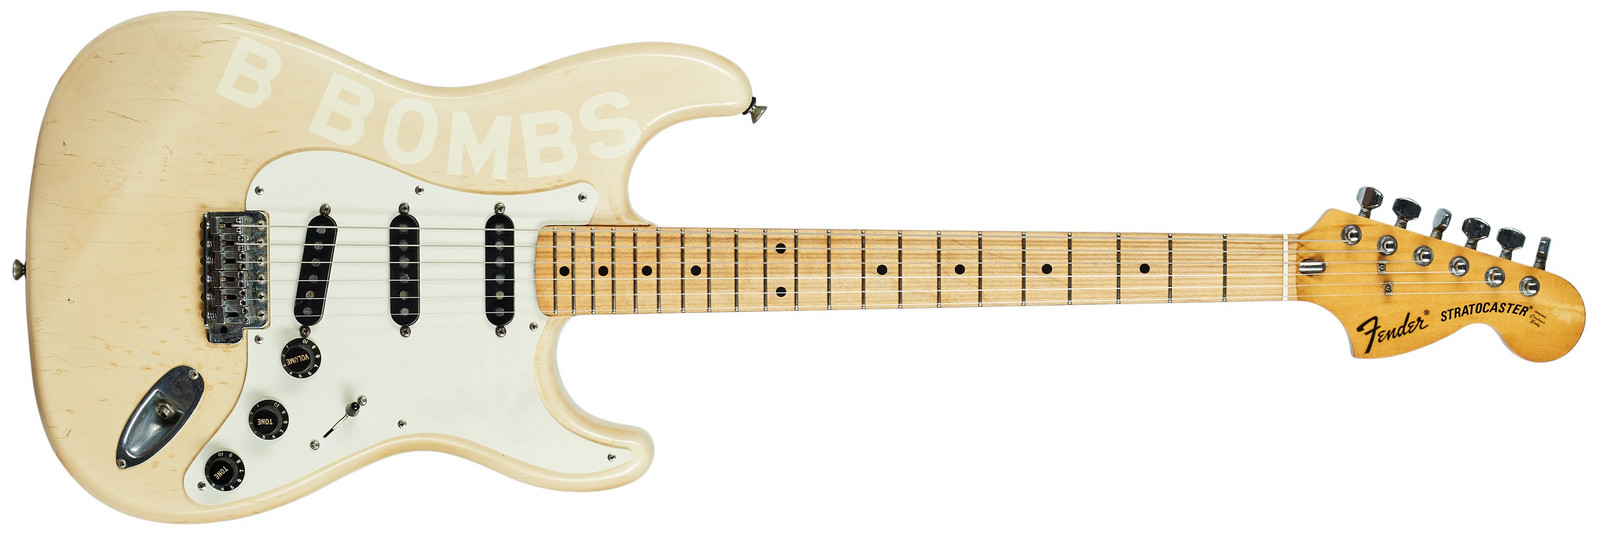 Fender 1985 Stratocaster ST72 Japan 